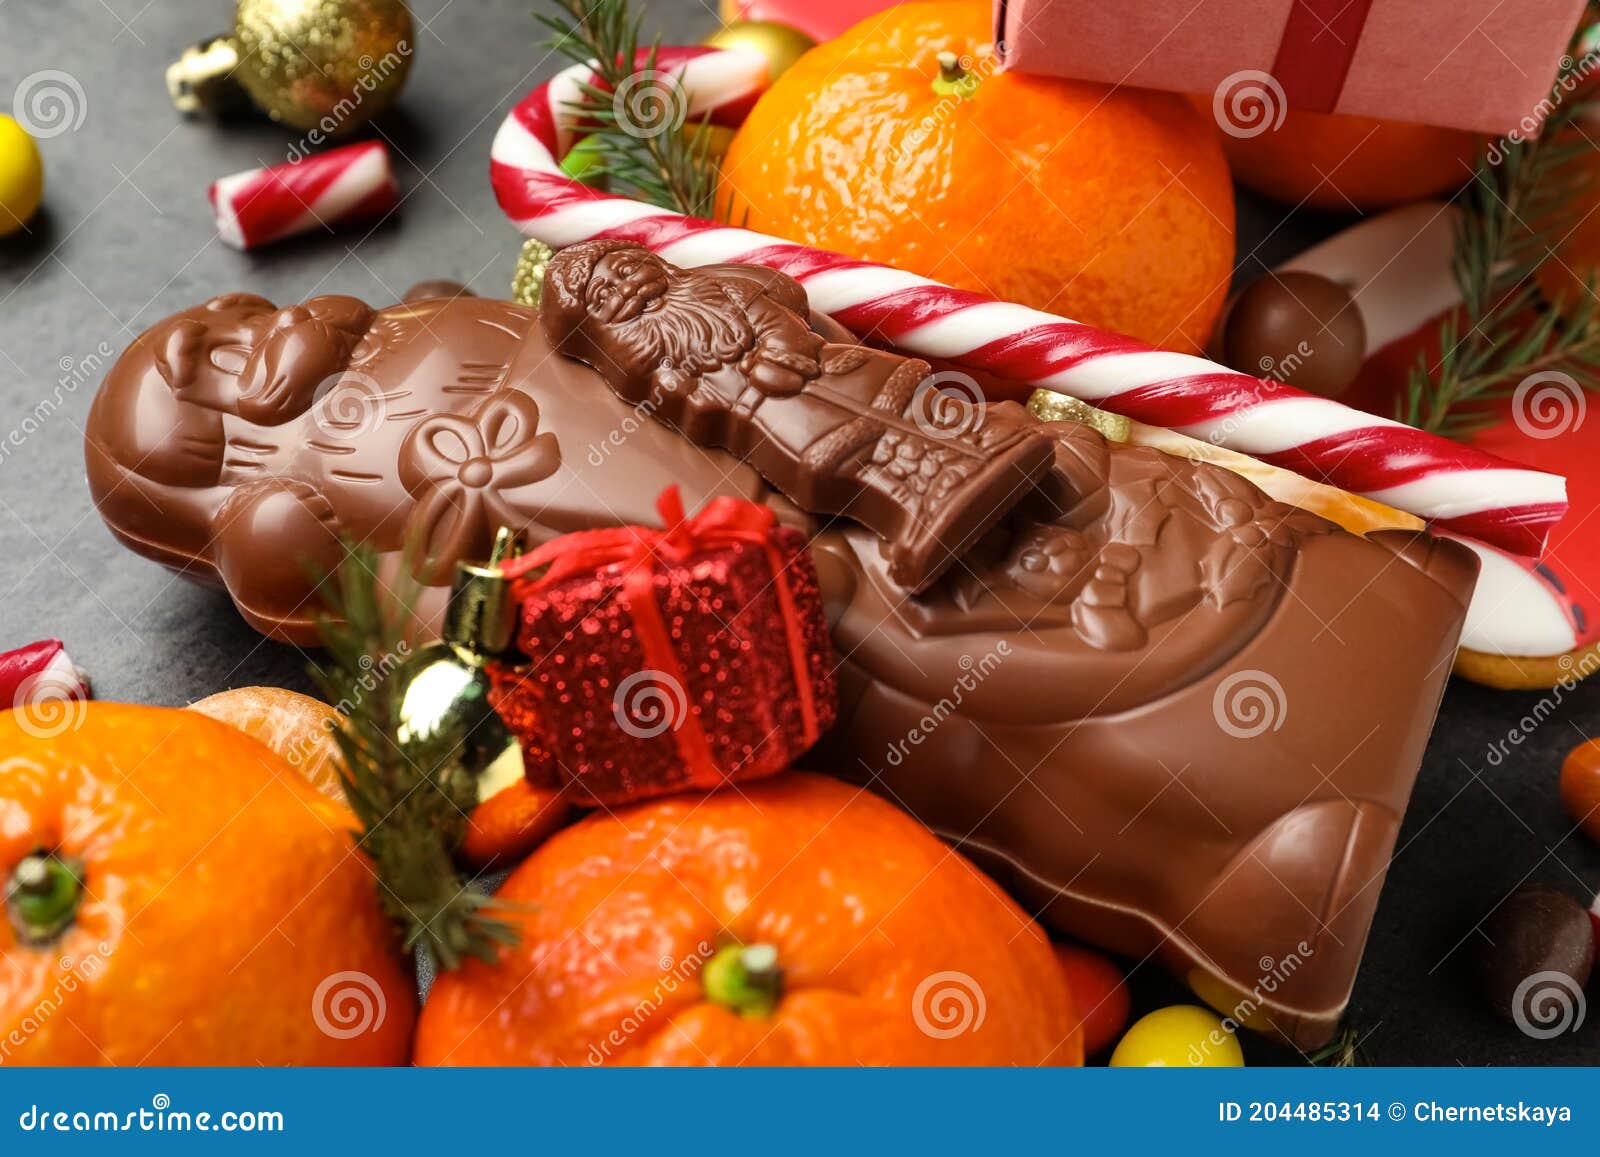 Gros Plan De Bonbons Du Père Noël Au Chocolat Et Fruits De